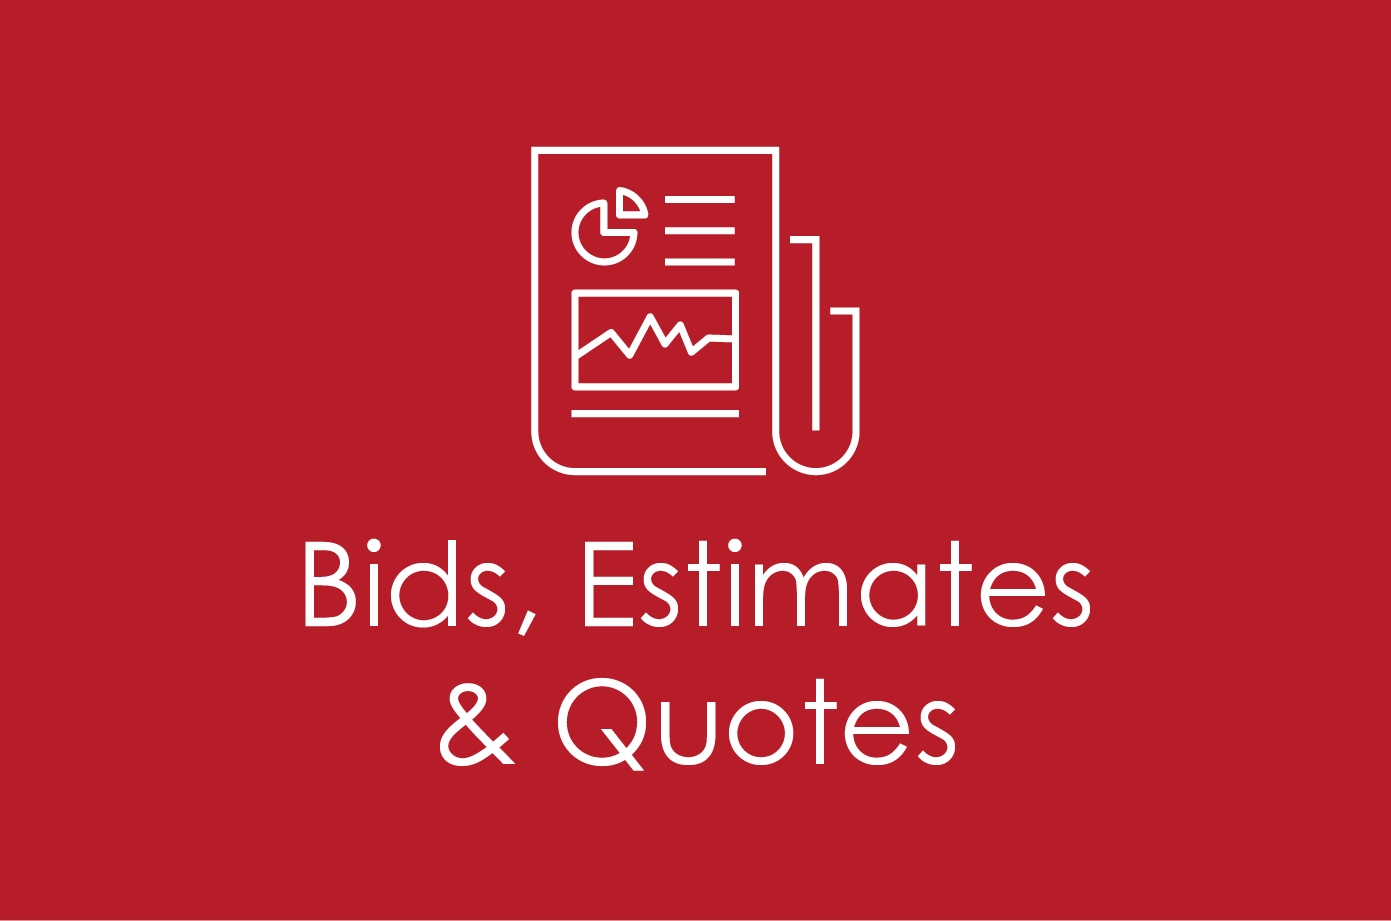 Bids, Estimates & Quotes